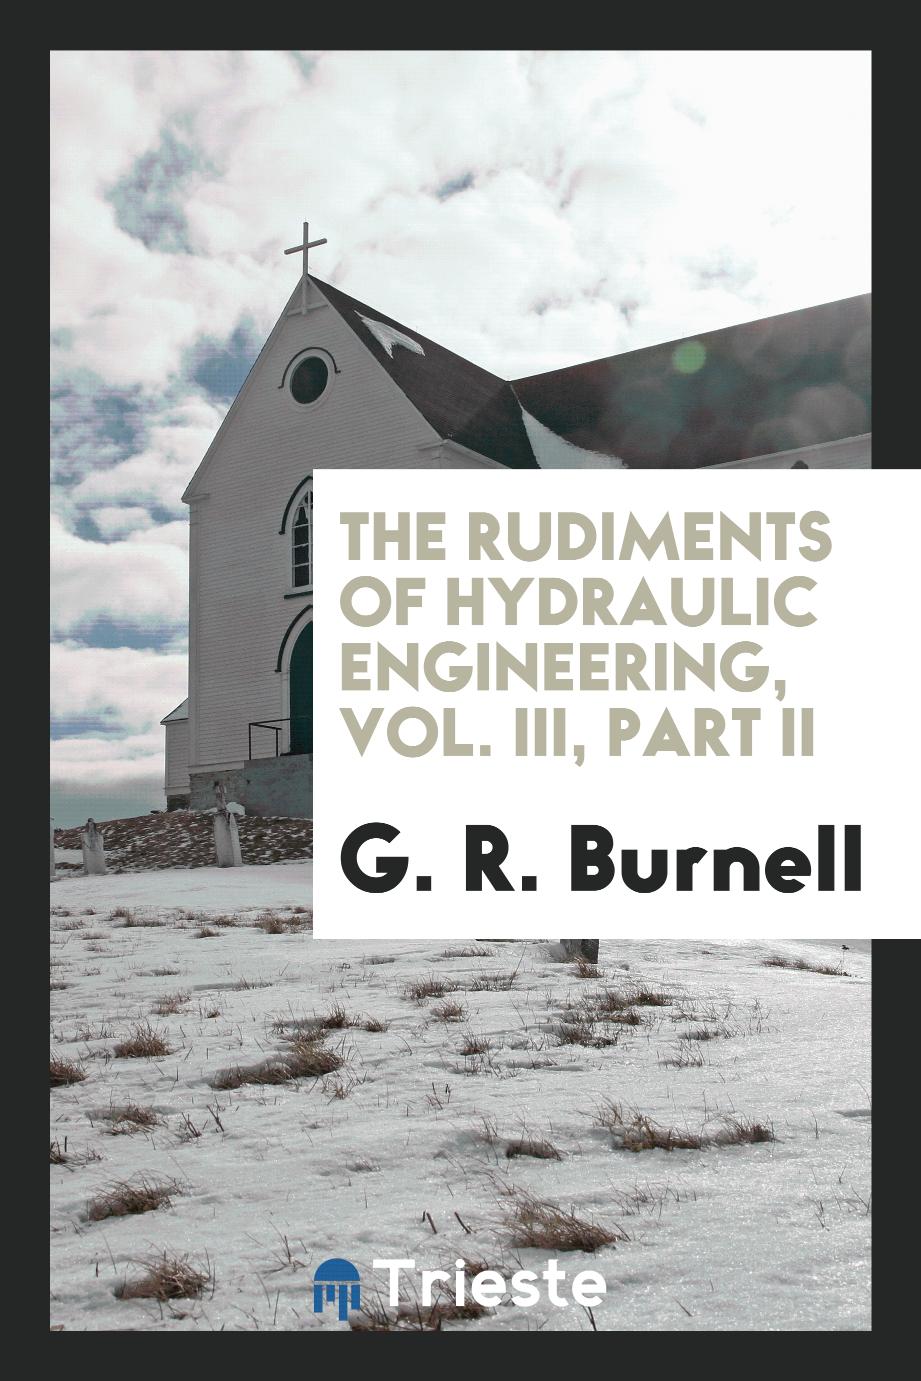 The rudiments of hydraulic engineering, Vol. III, Part II